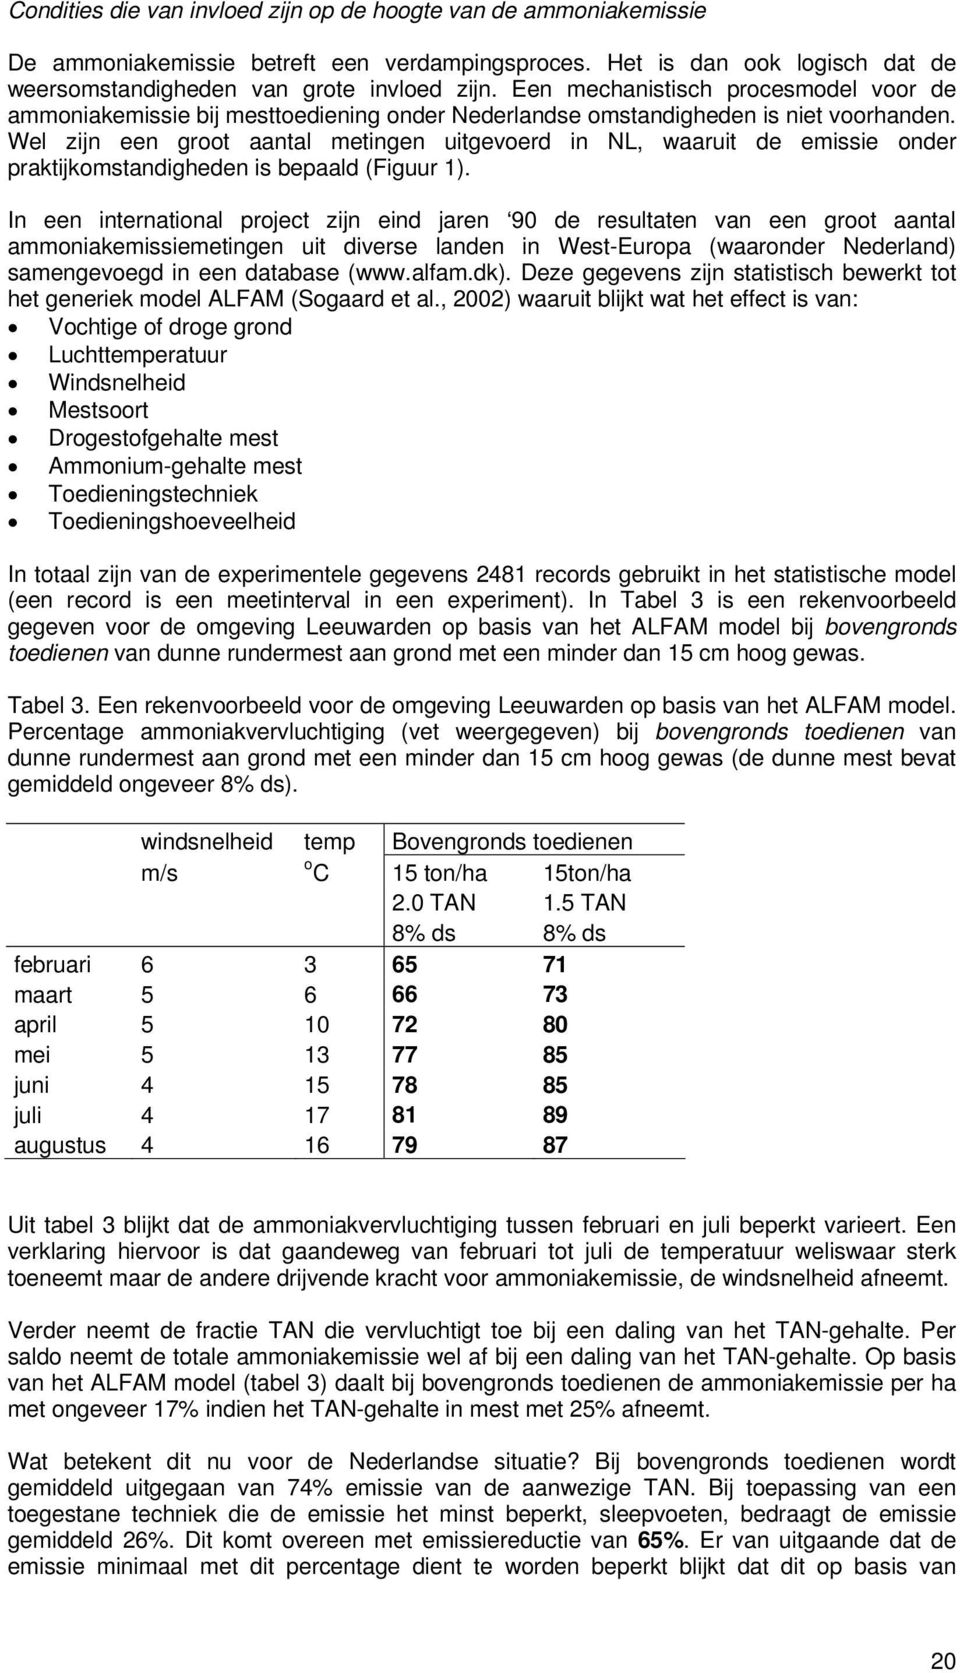 Wel zijn een groot aantal metingen uitgevoerd in NL, waaruit de emissie onder praktijkomstandigheden is bepaald (Figuur 1).